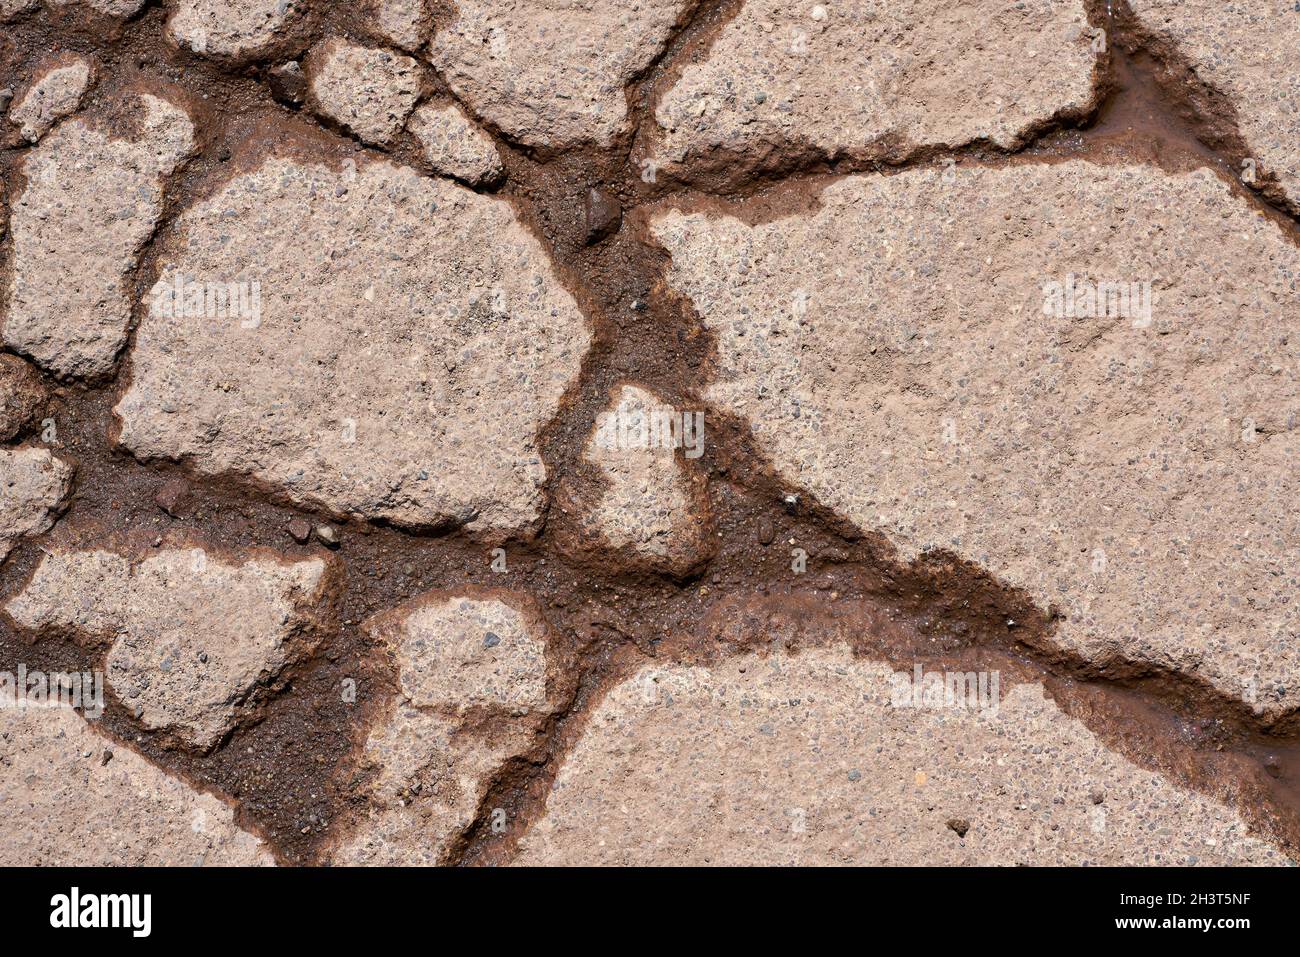 Grietas en la superficie del pavimento de una carretera desgastada Foto de stock